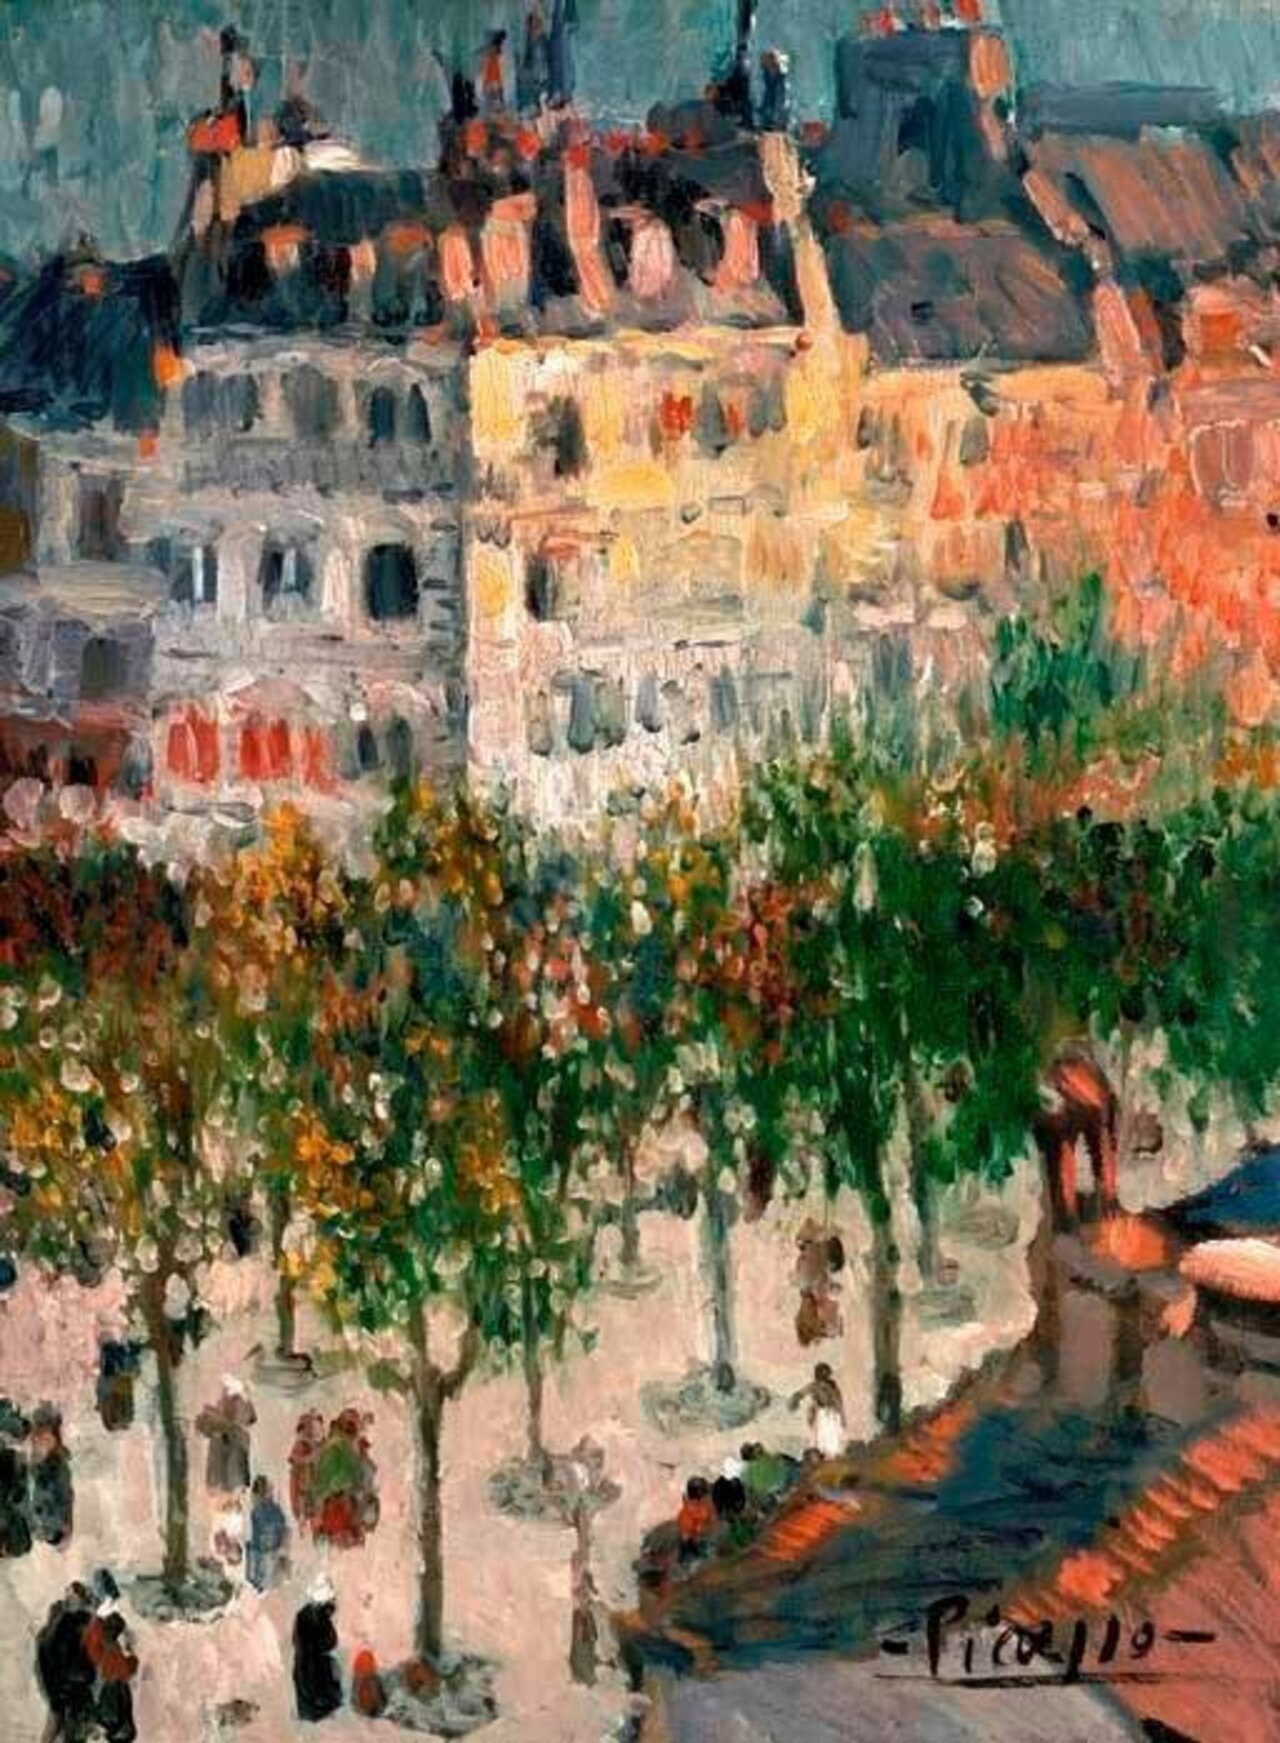 Pablo Picasso, Boulevard de Clichy, Paris, 1901 #art https://t.co/Eksu3Oe3d9